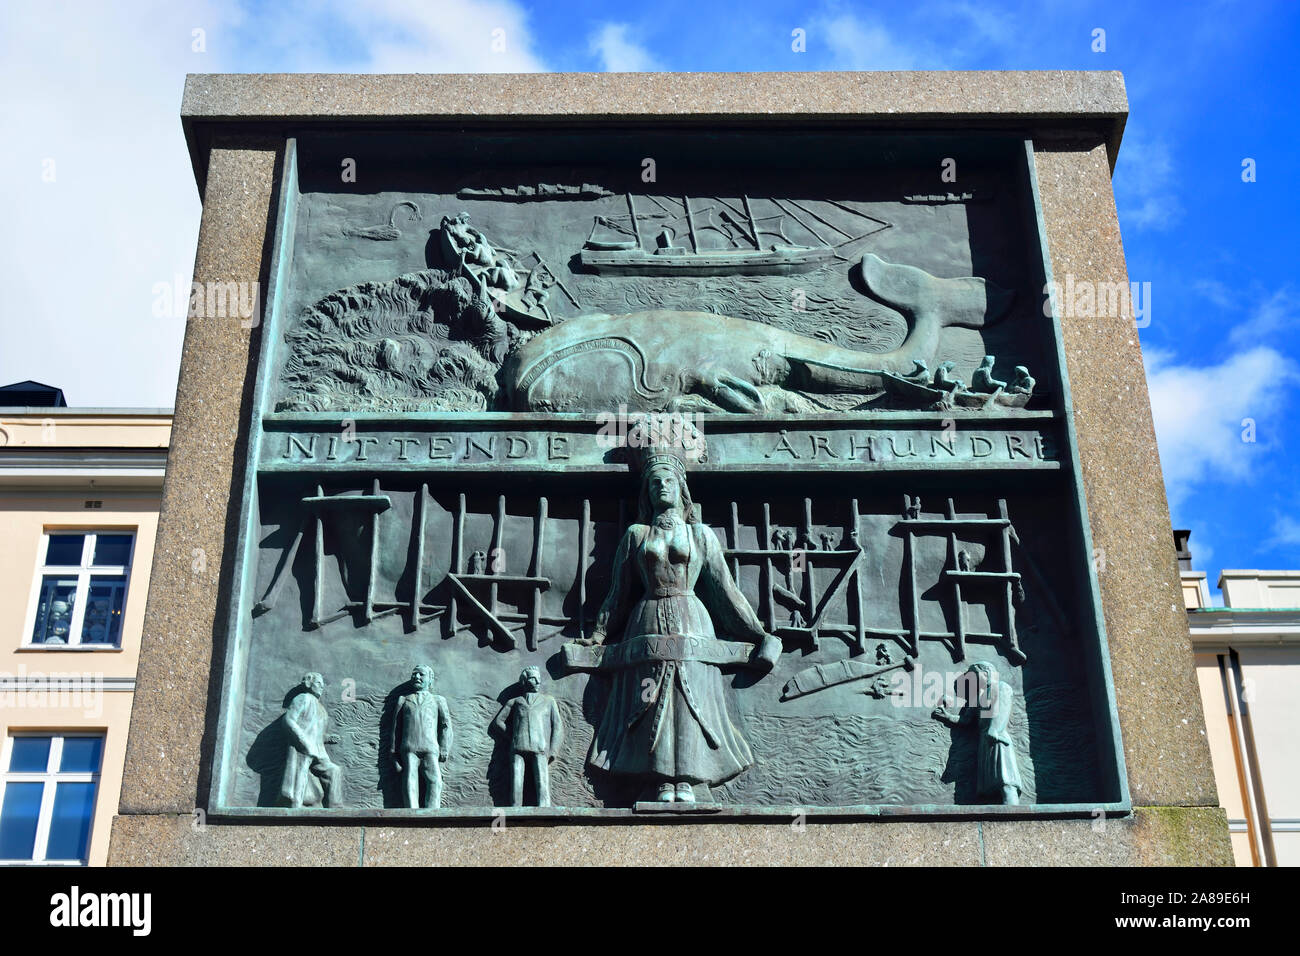 I marinai il monumento, creato dallo scultore Dyre VAA, in onore dei marinai norvegesi i traguardi raggiunti attraverso i secoli. Bergen, Norvegia Foto Stock